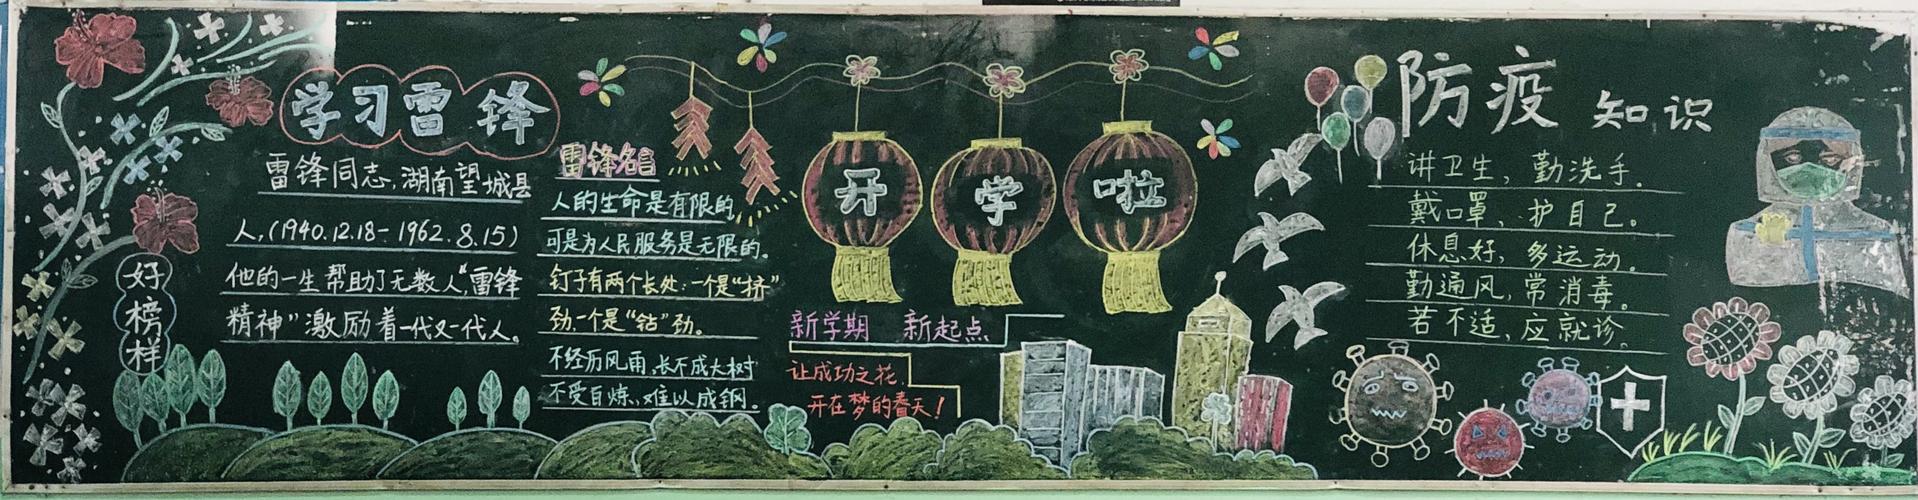 冲龙泉小学新学期黑板报展示 写美篇  2020年注定是不平凡的一年